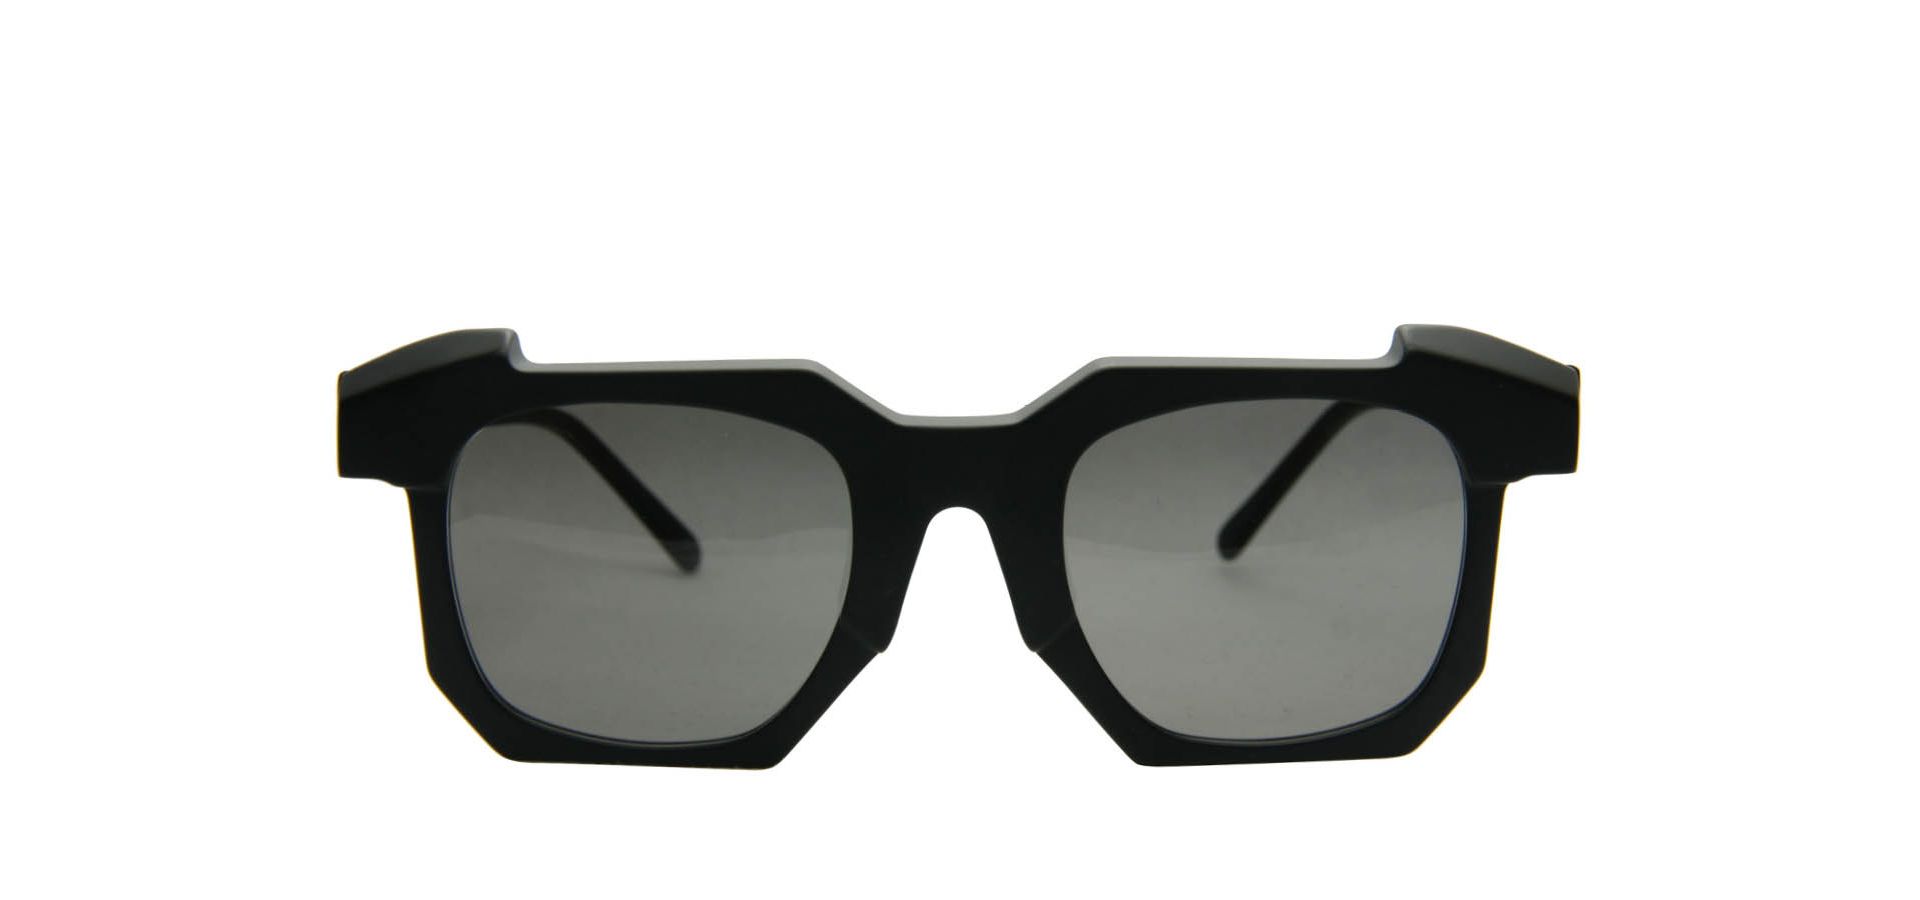 Sončna očala Kuboraum K2 5024 BB SMOKE: Velikost: 50/24, Spol: unisex, Material: acetat